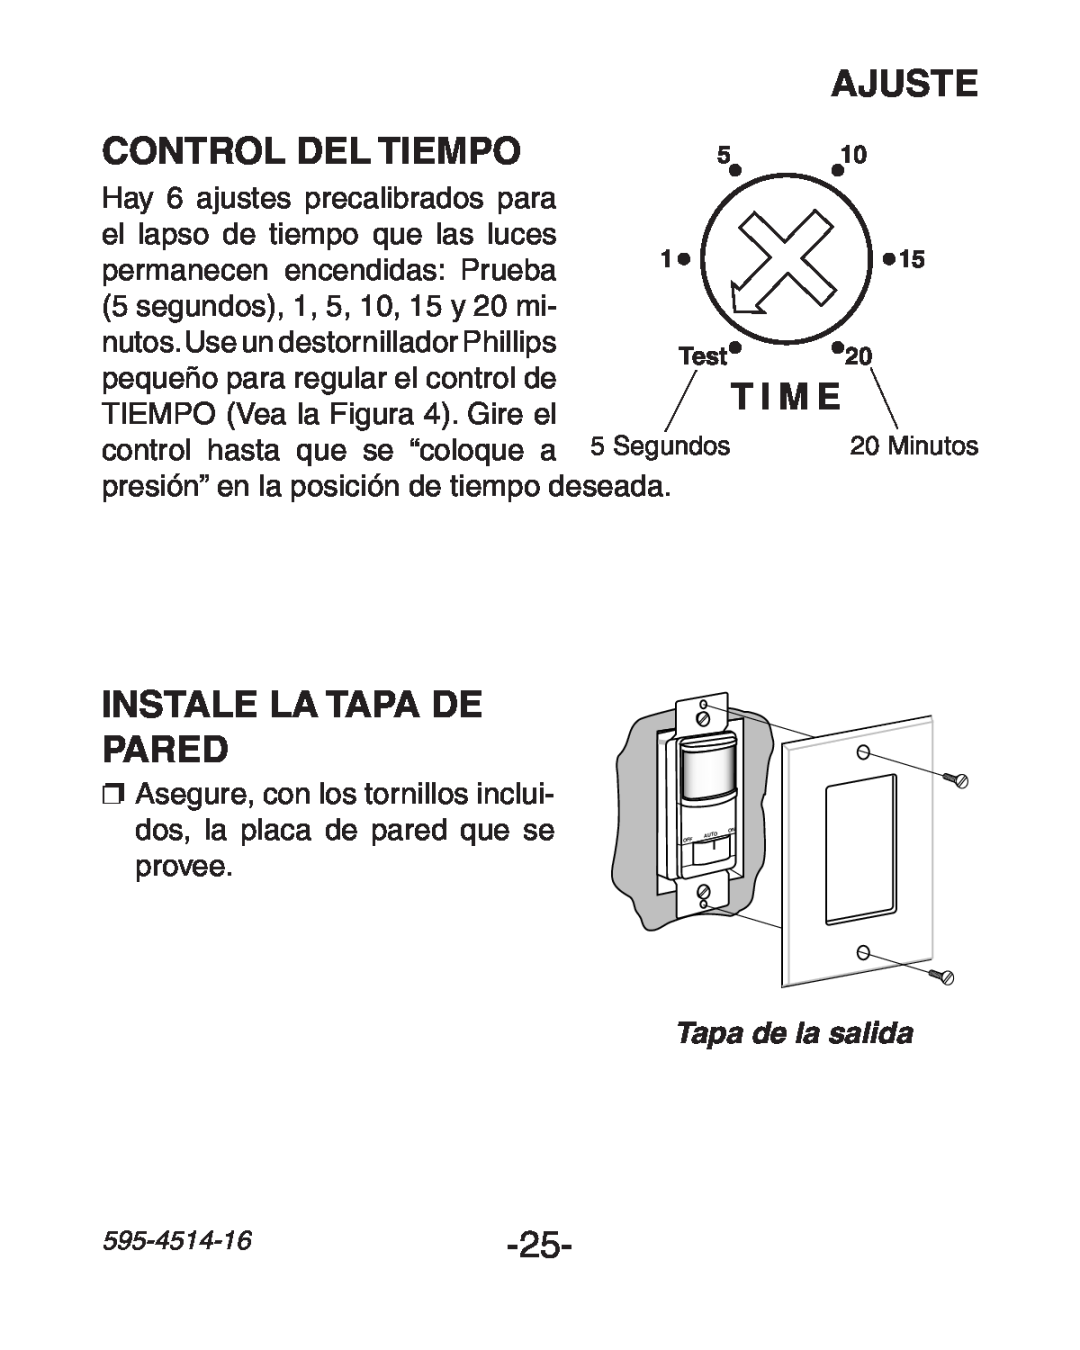 Heath Zenith 6107 manual Ajuste, Control del Tiempo, Instale la Tapa de Pared, T I M E, Tapa de la salida 